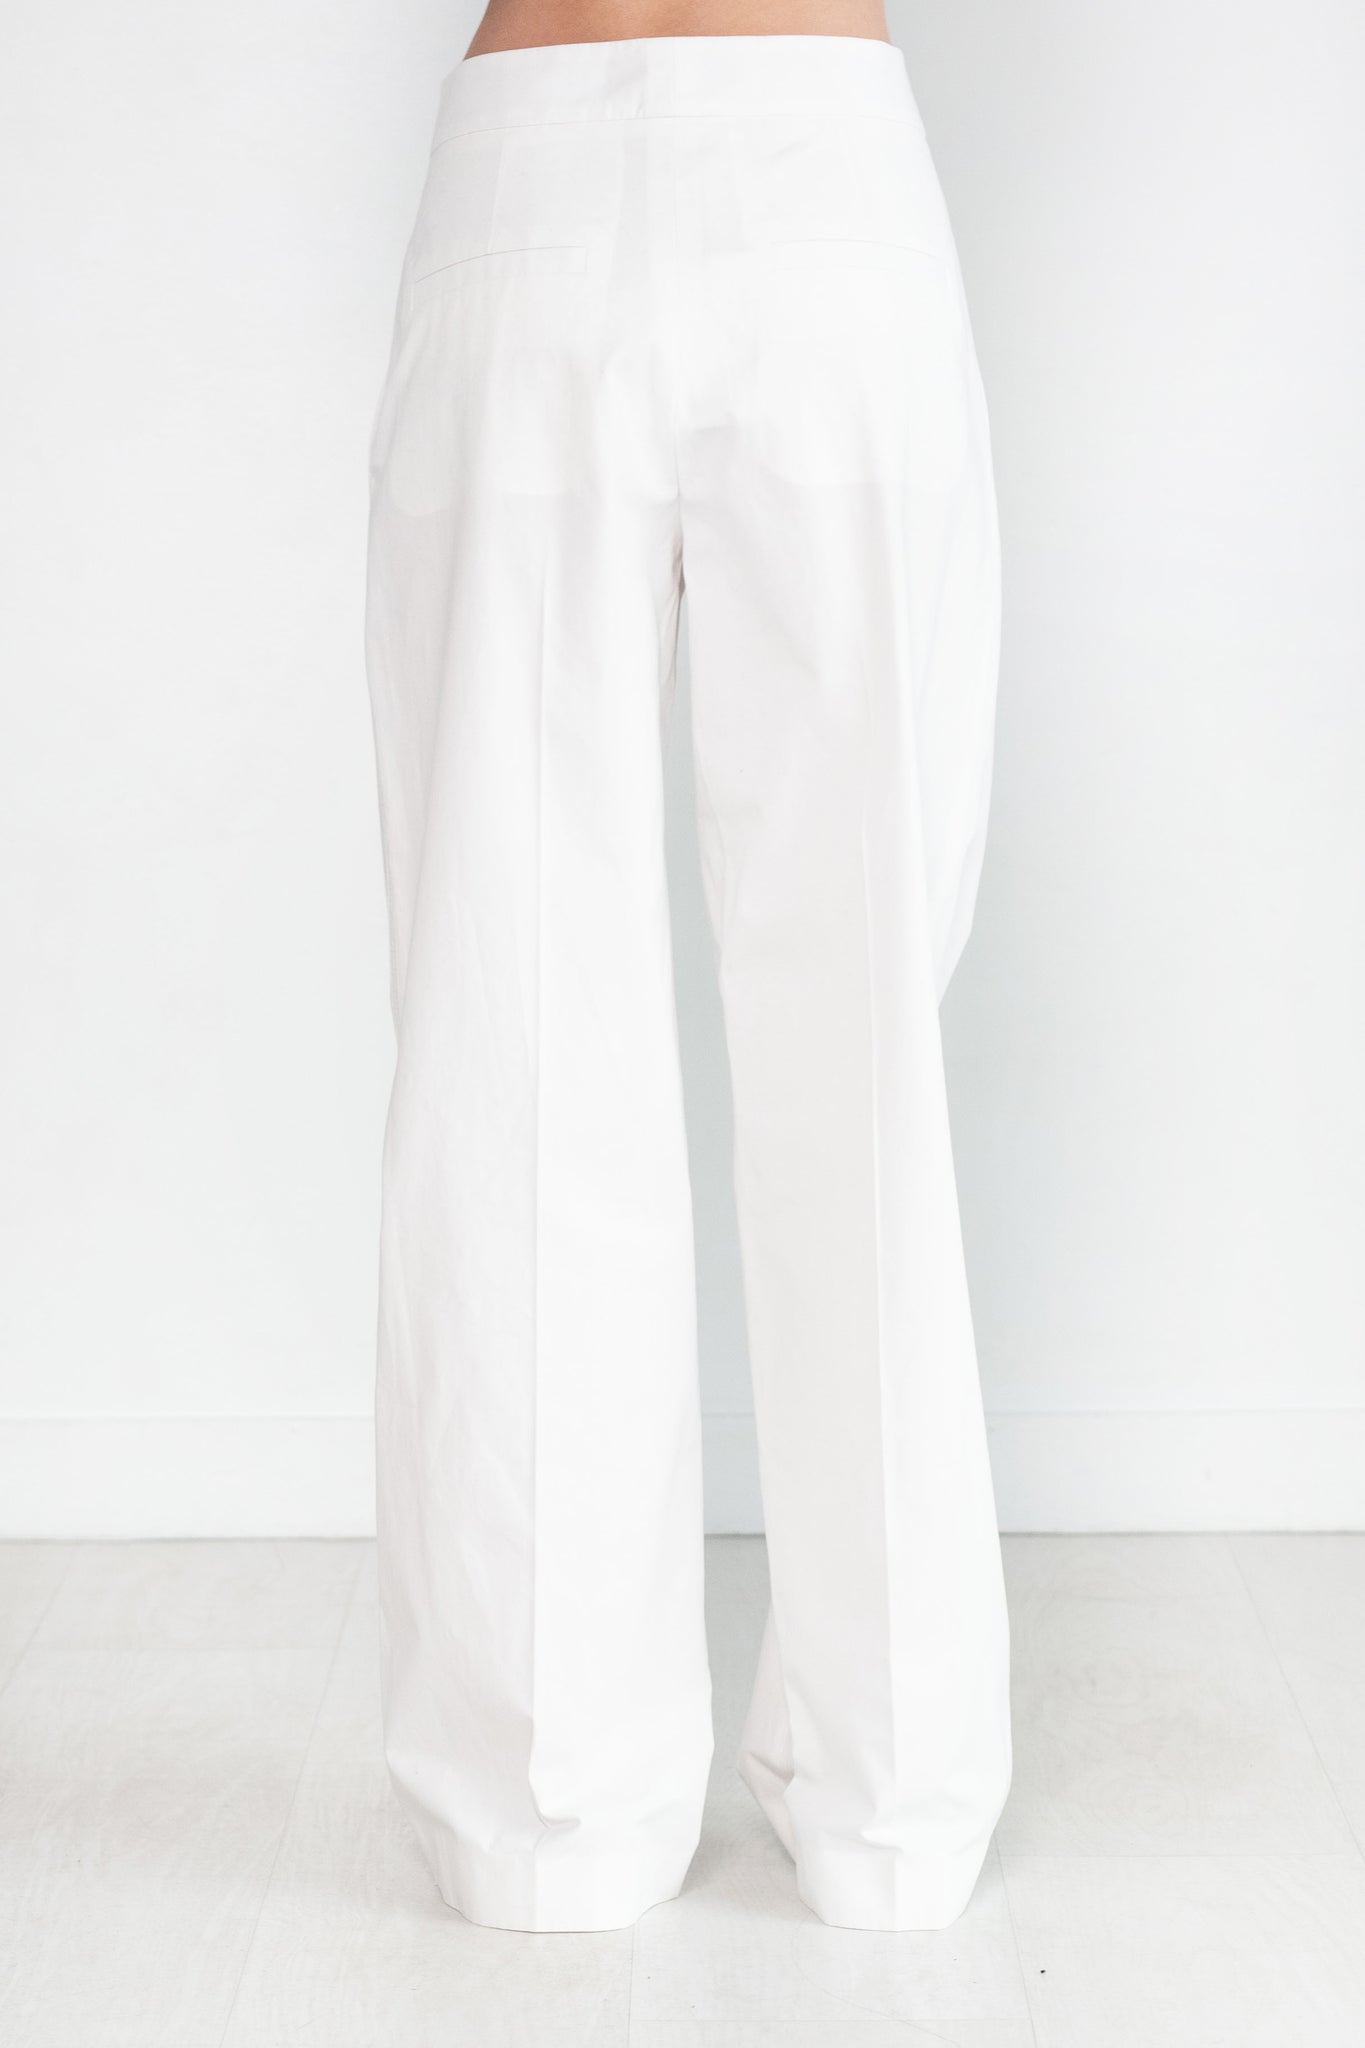 GAUCHERE - Pants, Off White